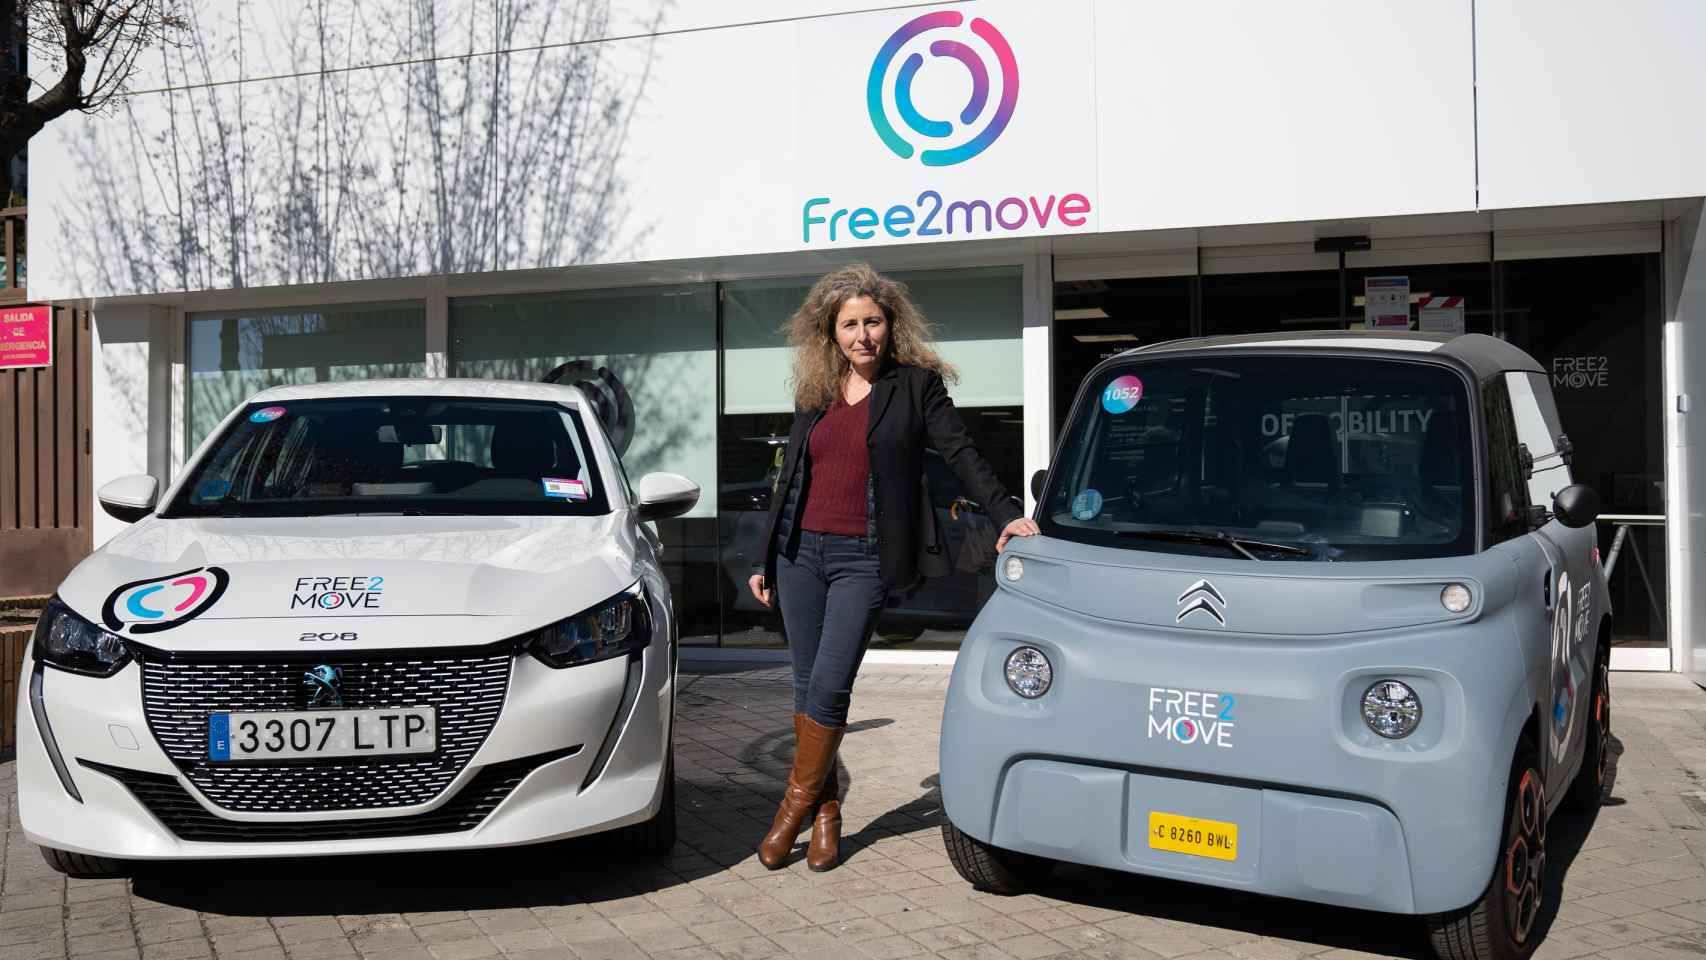 Brigitte Courtehoux junto a los coches con los que opera Free2move en España: un Peugeot 208 y un Citroën Ami, ambos eléctricos.